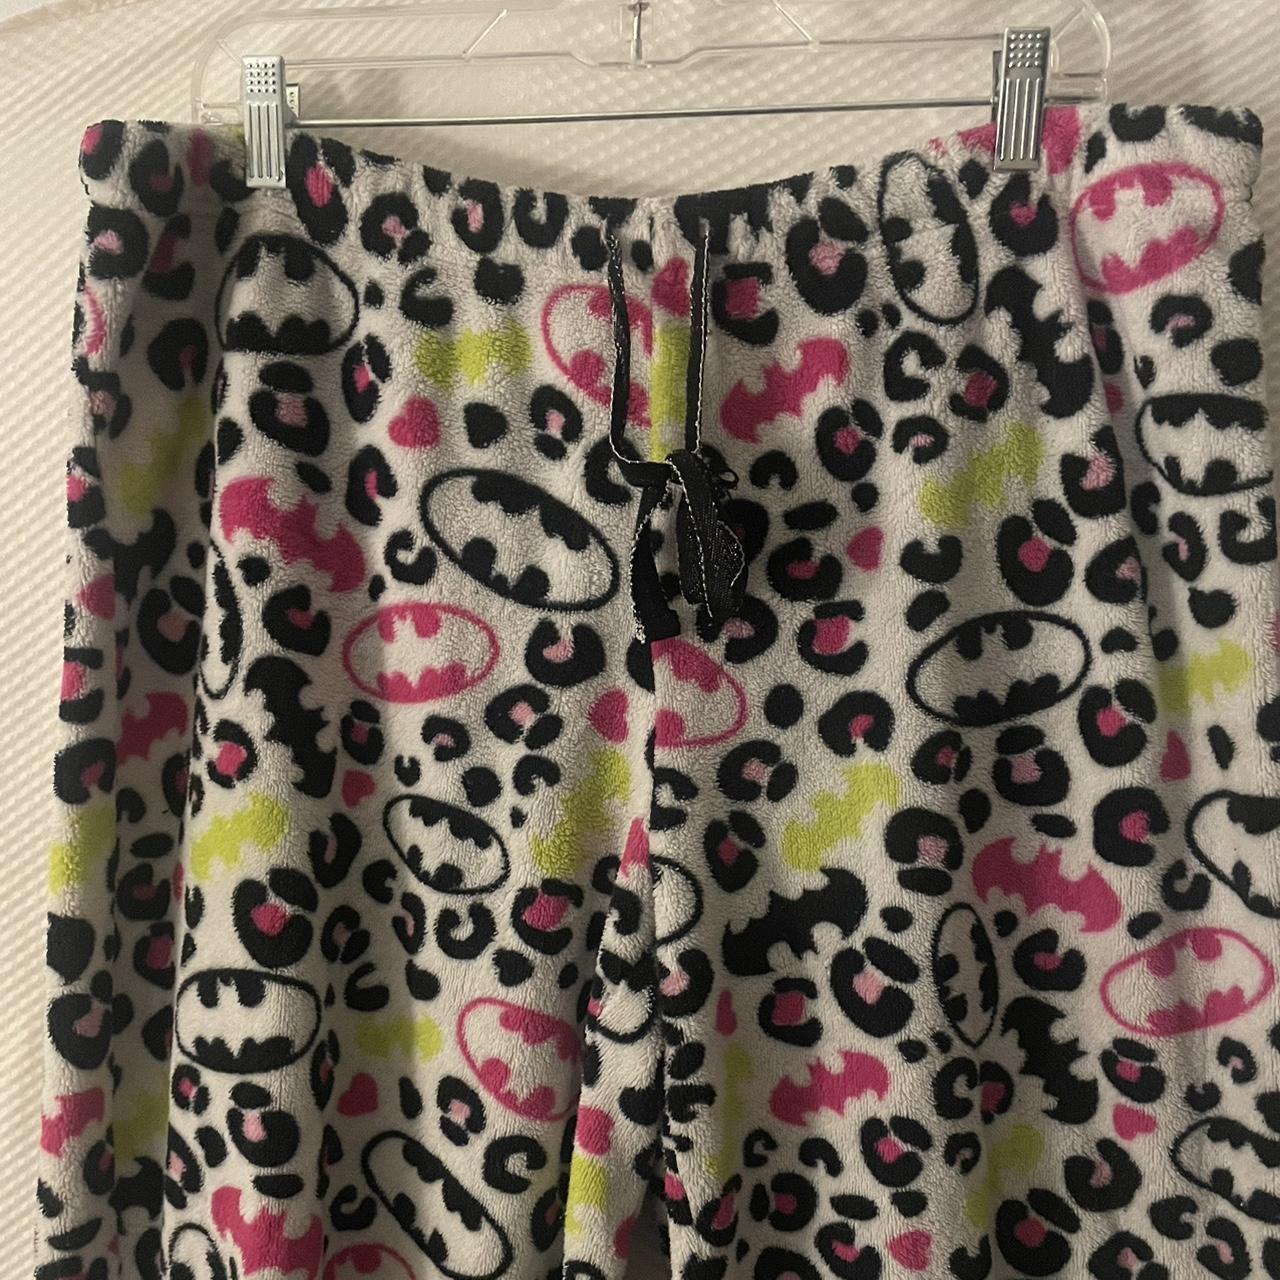 booty by brabants cheetah print leggings. would best - Depop